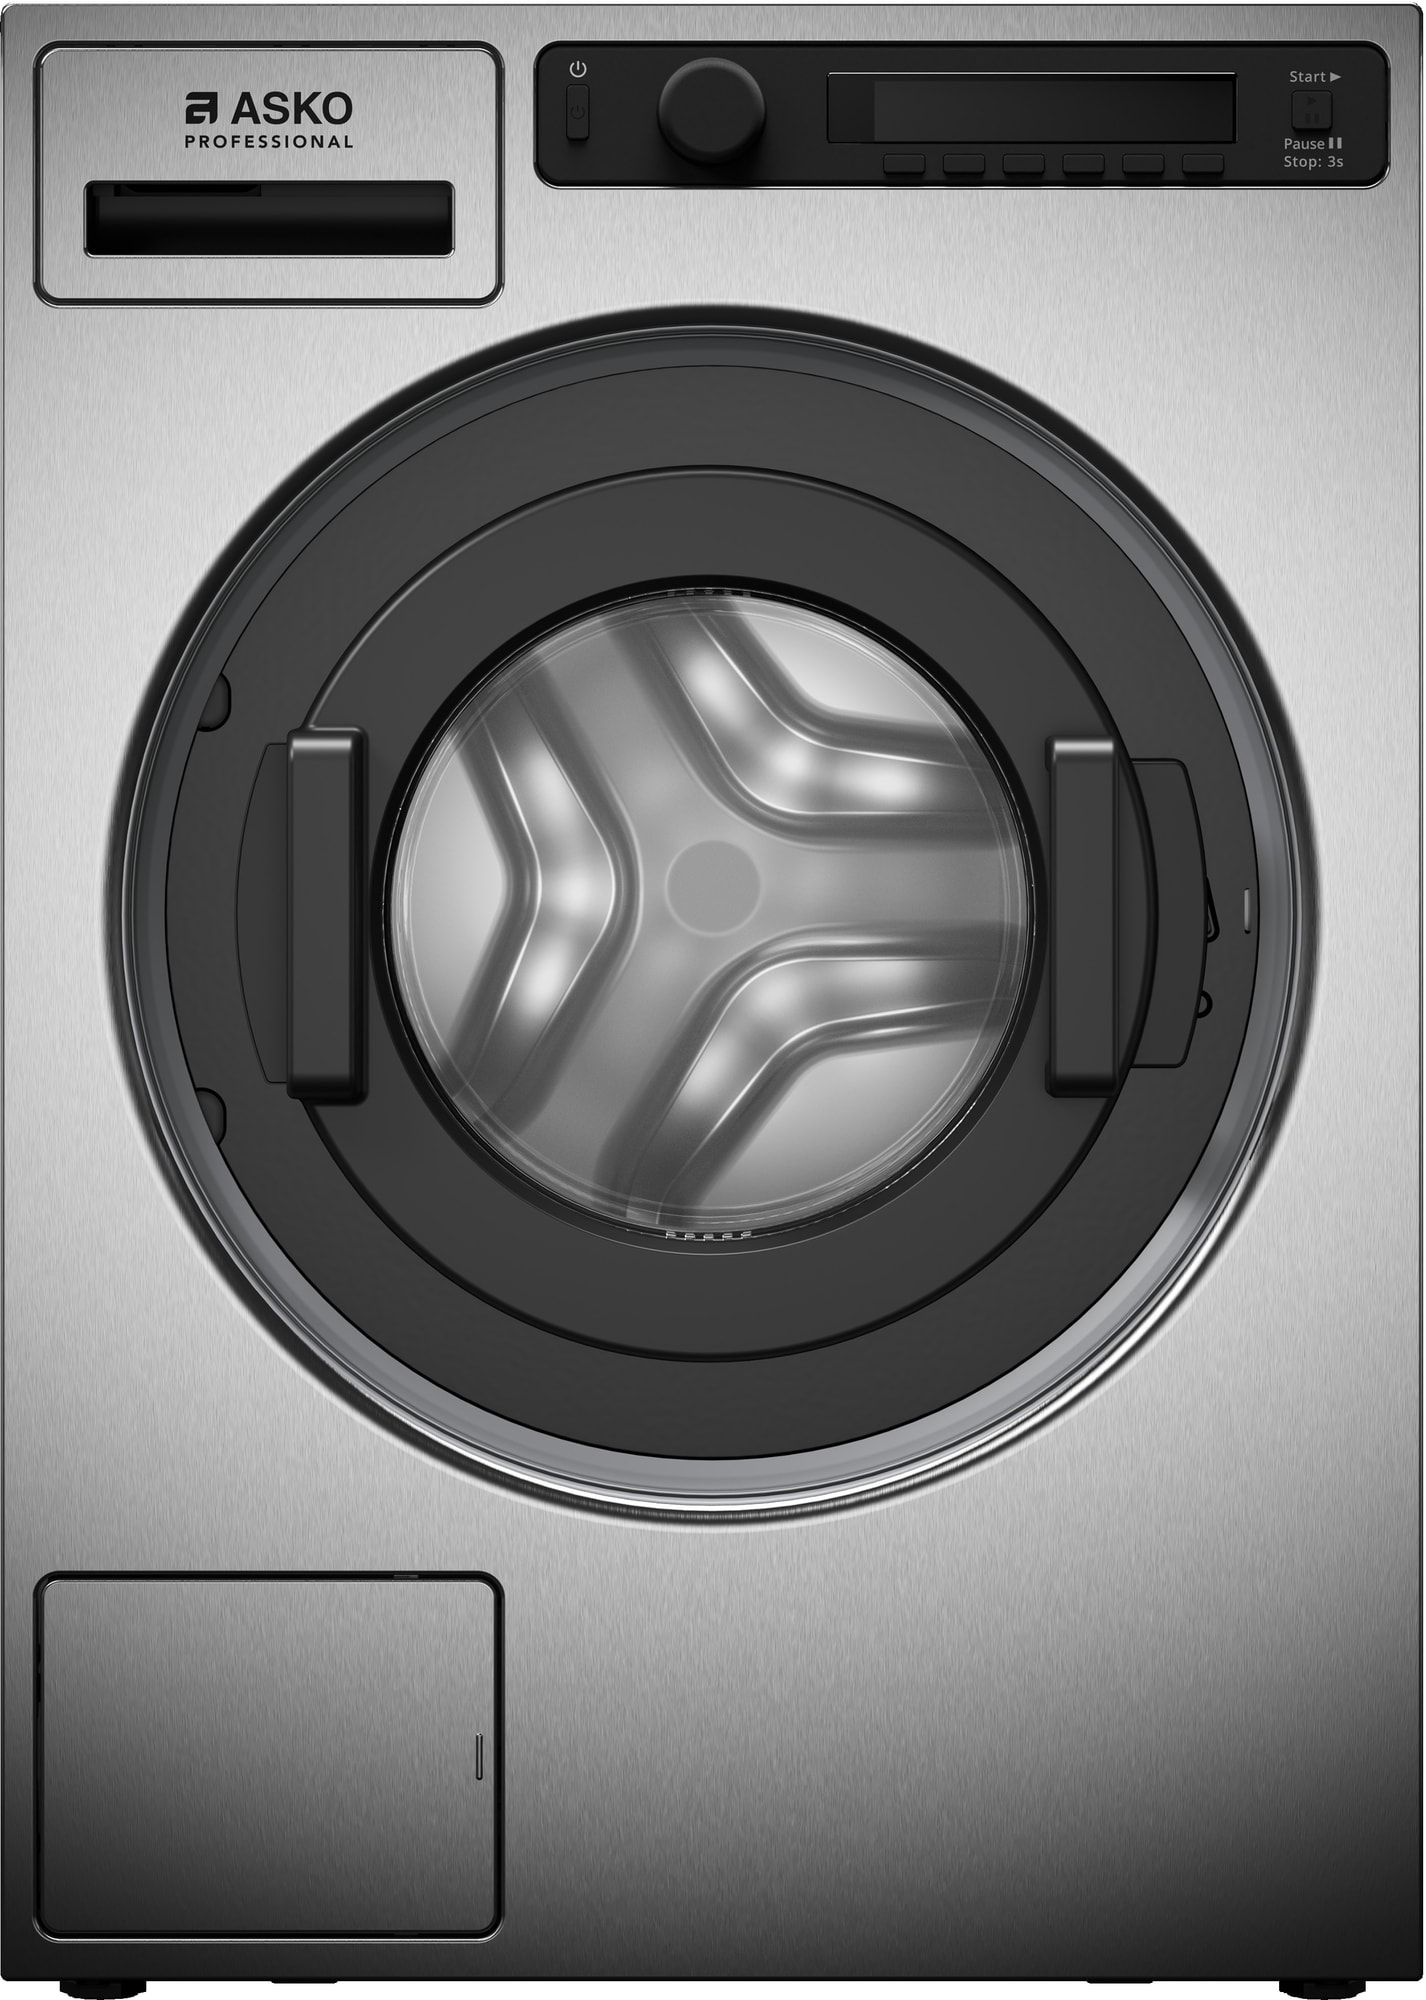 Gode råd til valg af vaskemaskine 2021 - Hvidevaremagasinet